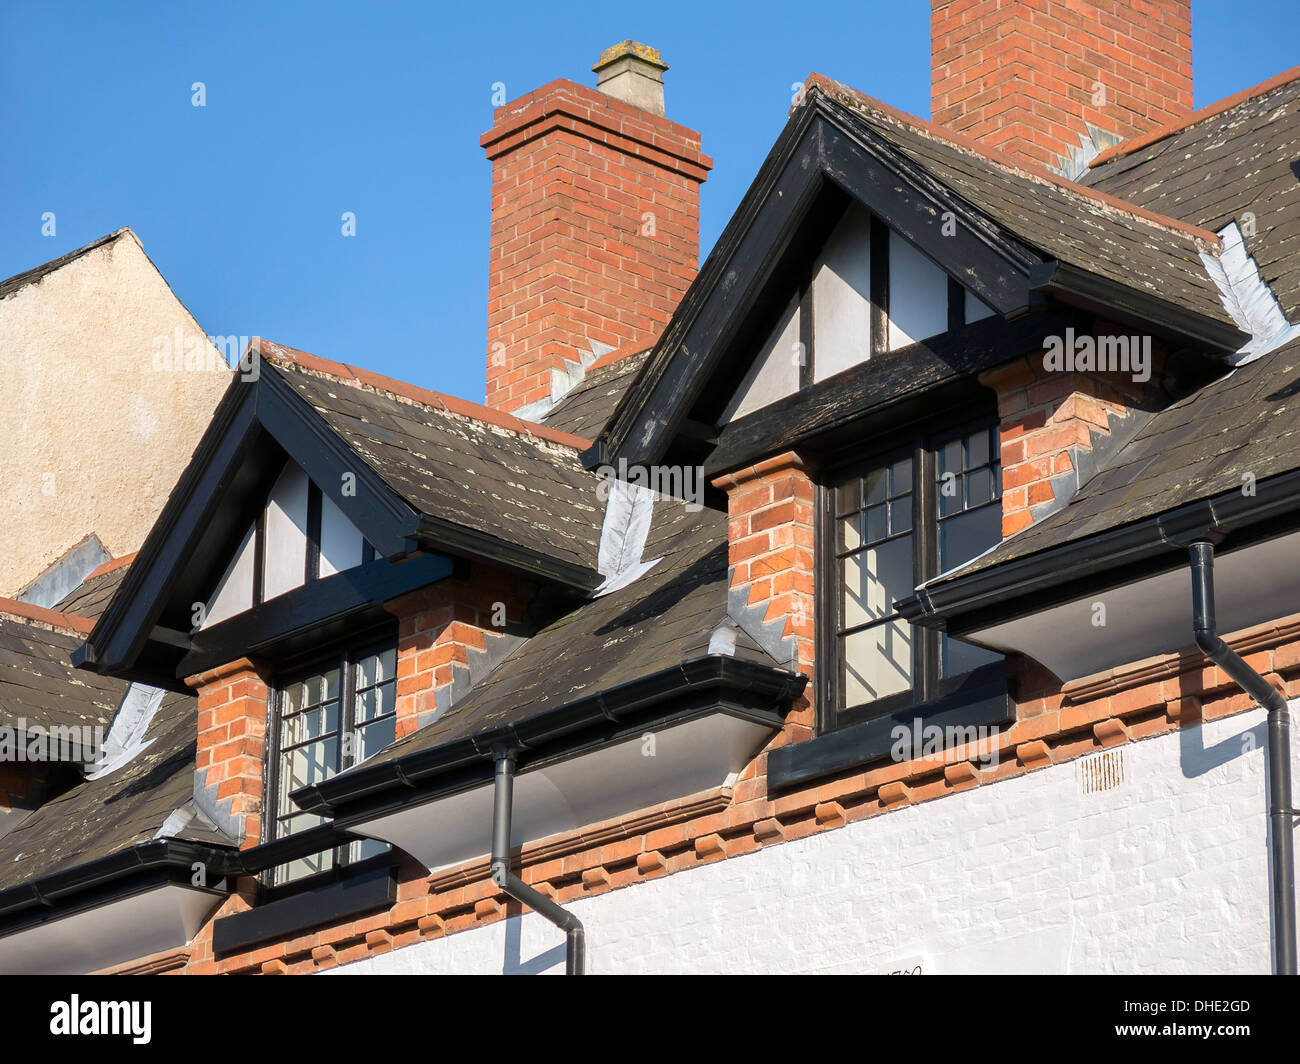 Vieilles lucarnes à toit en ardoise, Melton Mowbray, Leicestershire, Angleterre, Royaume-Uni. Banque D'Images